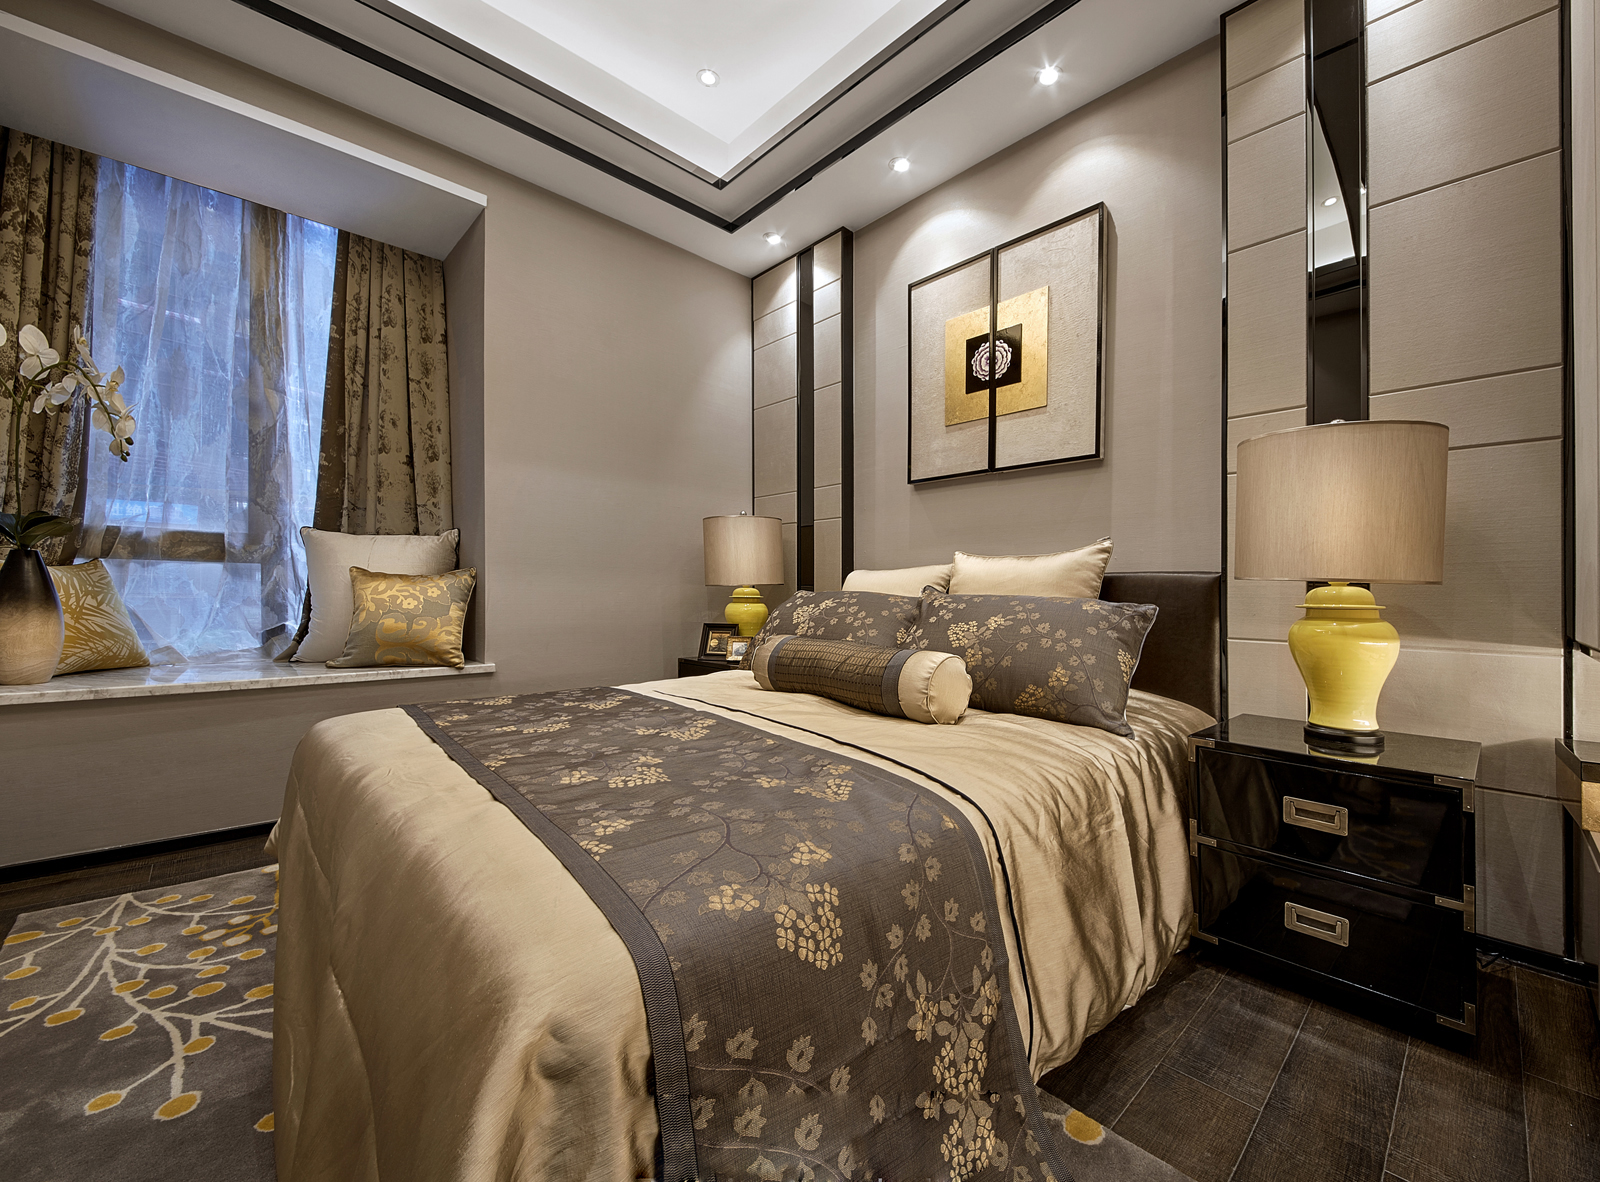 二居 旧房改造 中式 卧室图片来自北京今朝装饰在中式客中山水的分享